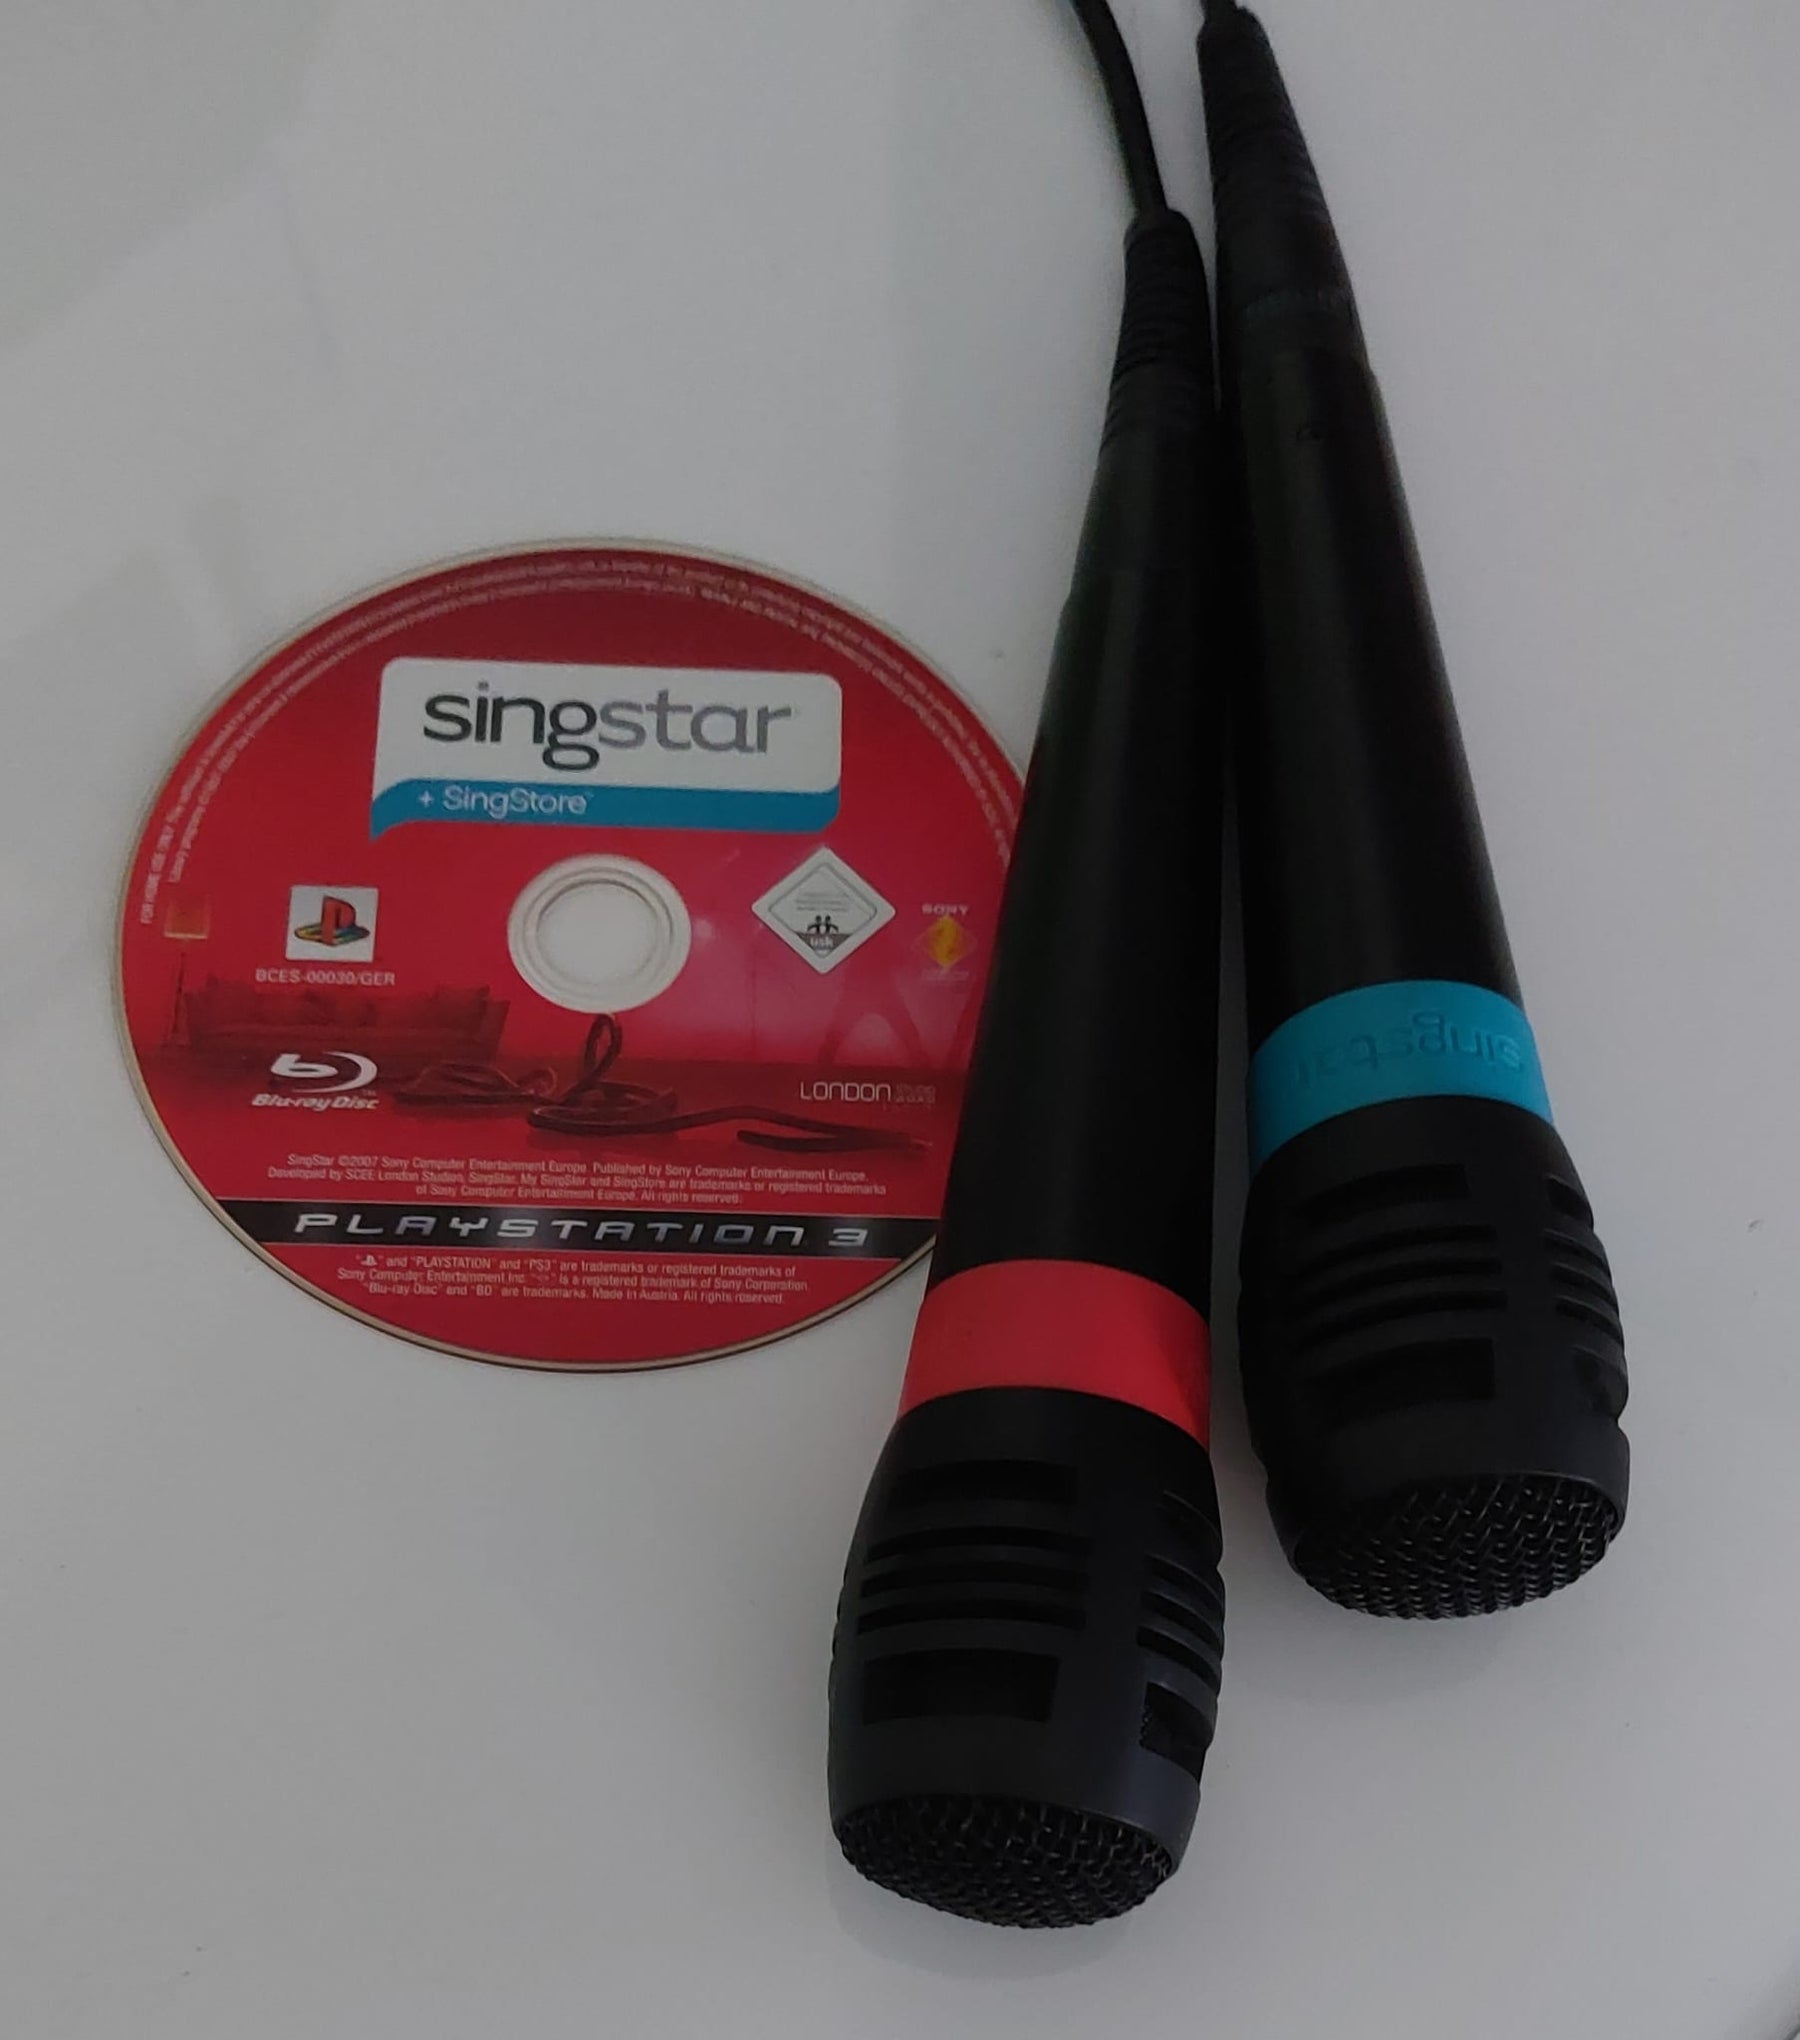 SingStar Vol 1 inkl 2 Mikrofone PS3 (Playstation 3) [Gut]